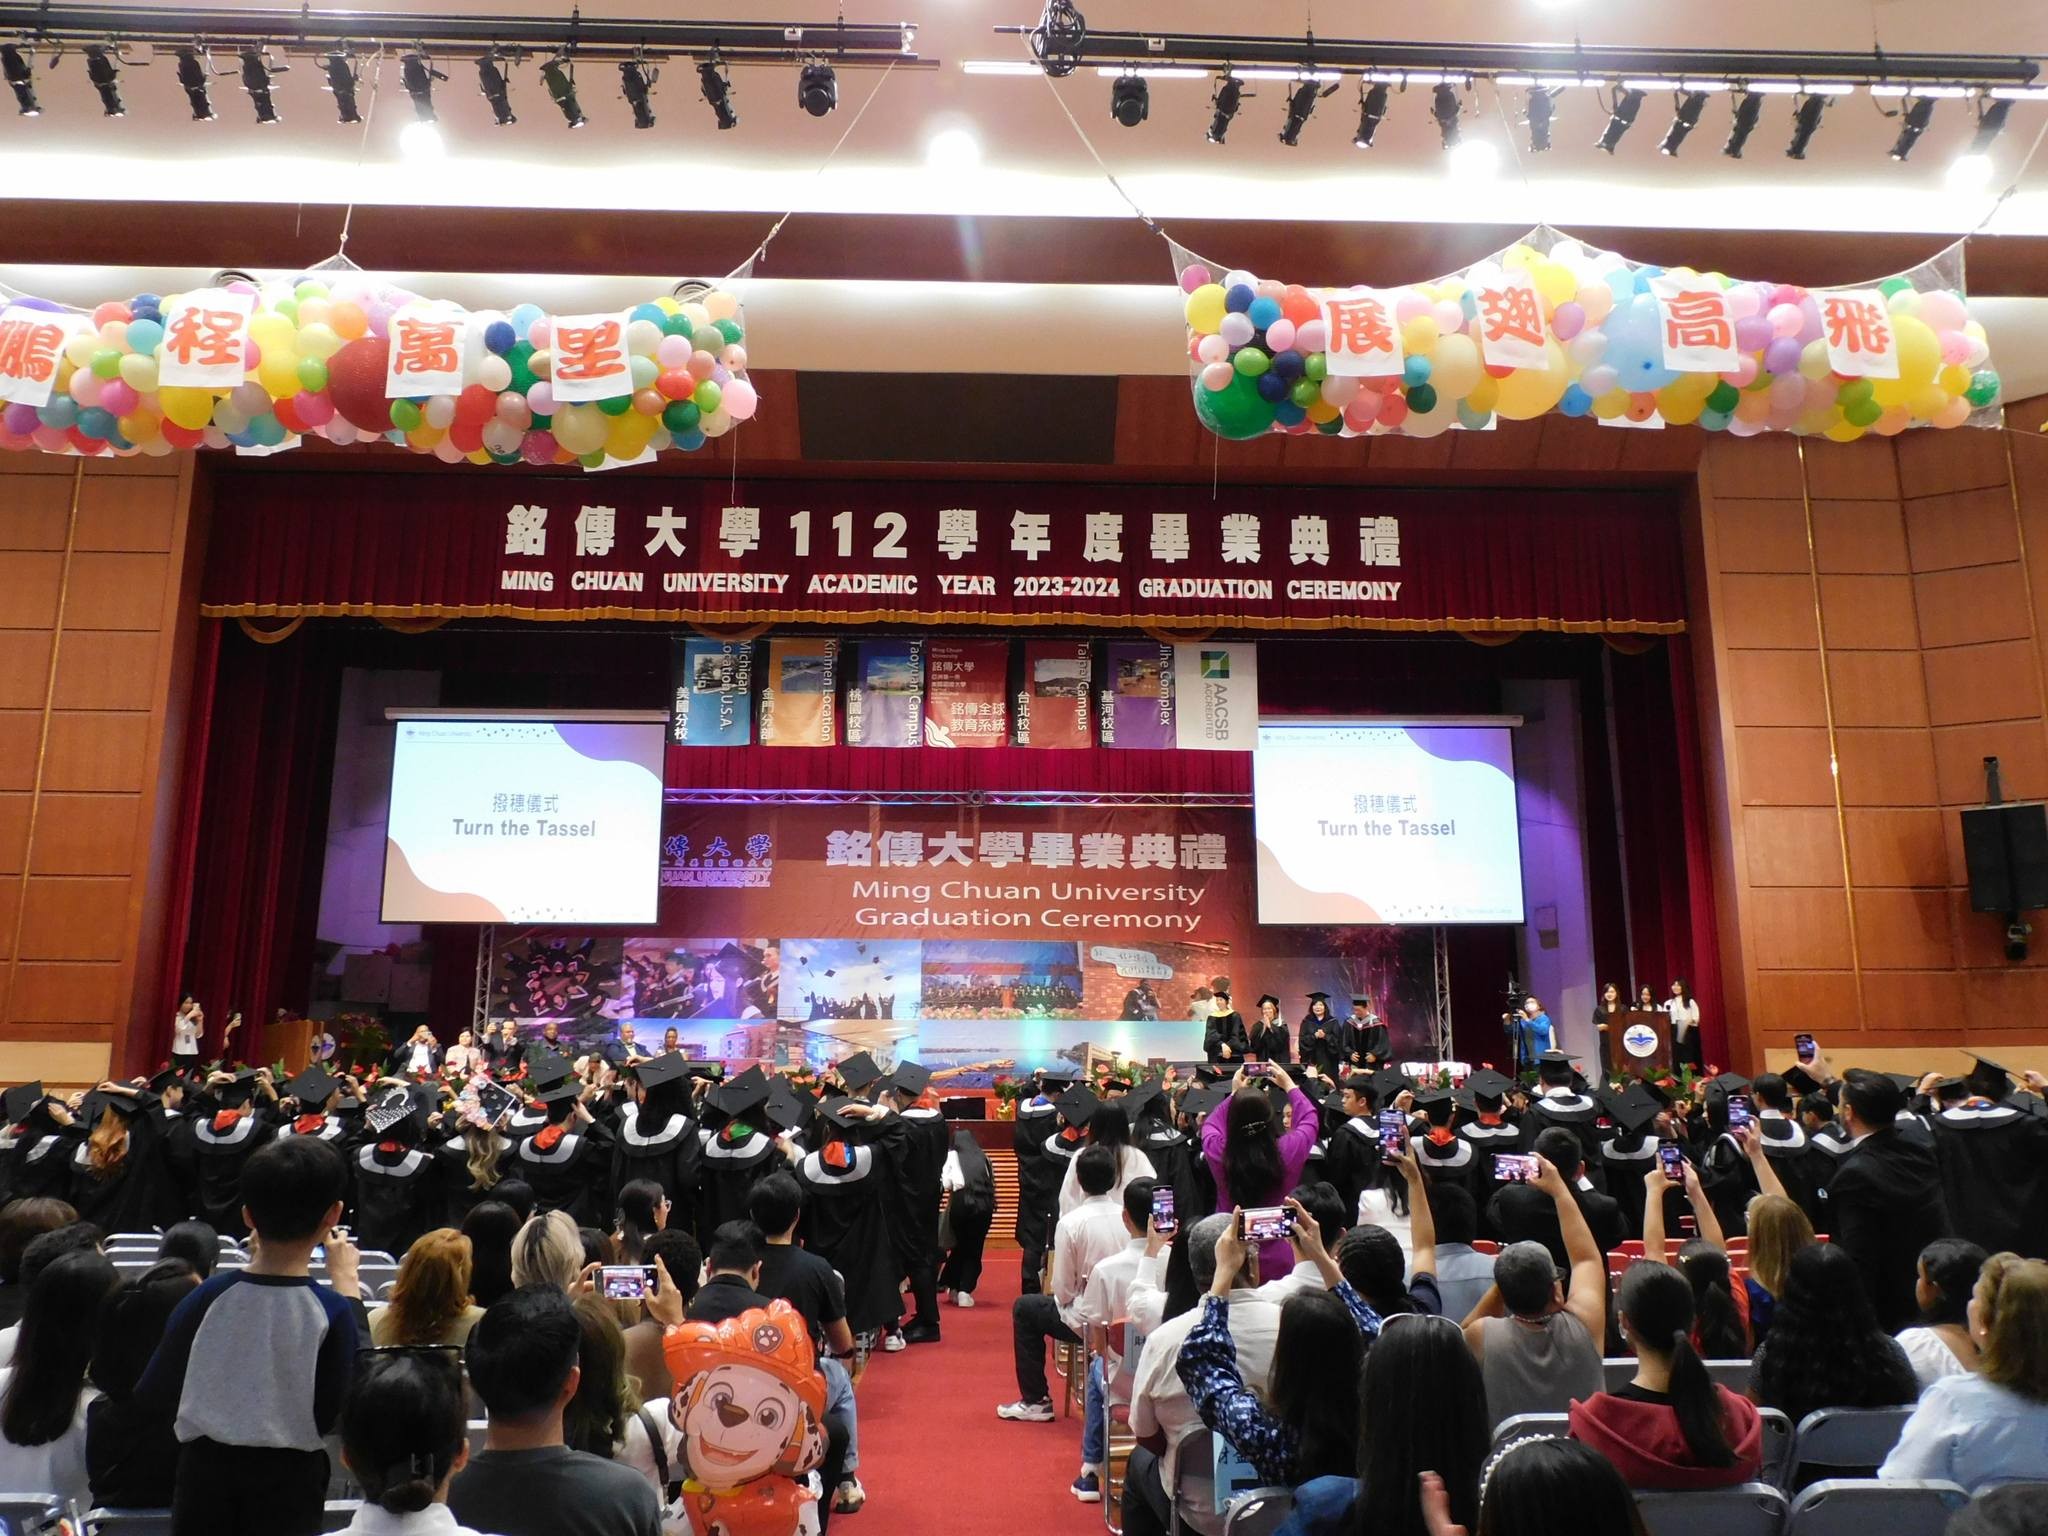 Chúc mừng các sinh viên chương trình QTKD chuyên ngành Báo chí và Truyền thông đại chúng - Khóa 2 đã tốt nghiệp sau 02 năm học tại ĐH Minh Truyền (Đài Loan)